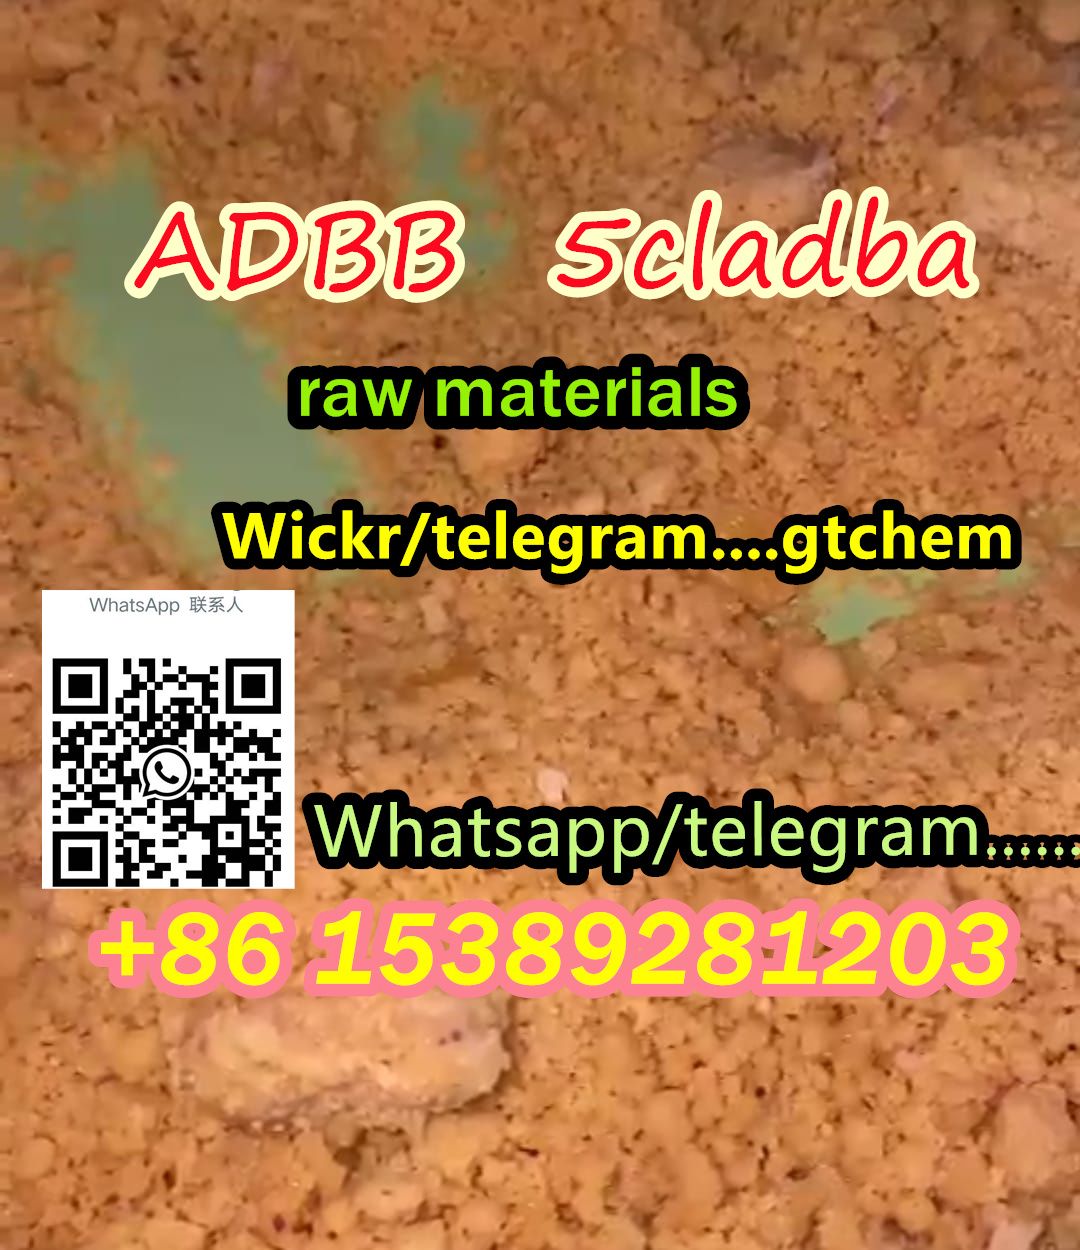 Strong adbb ADBB 5cl 5cladba 5cladb raw materials